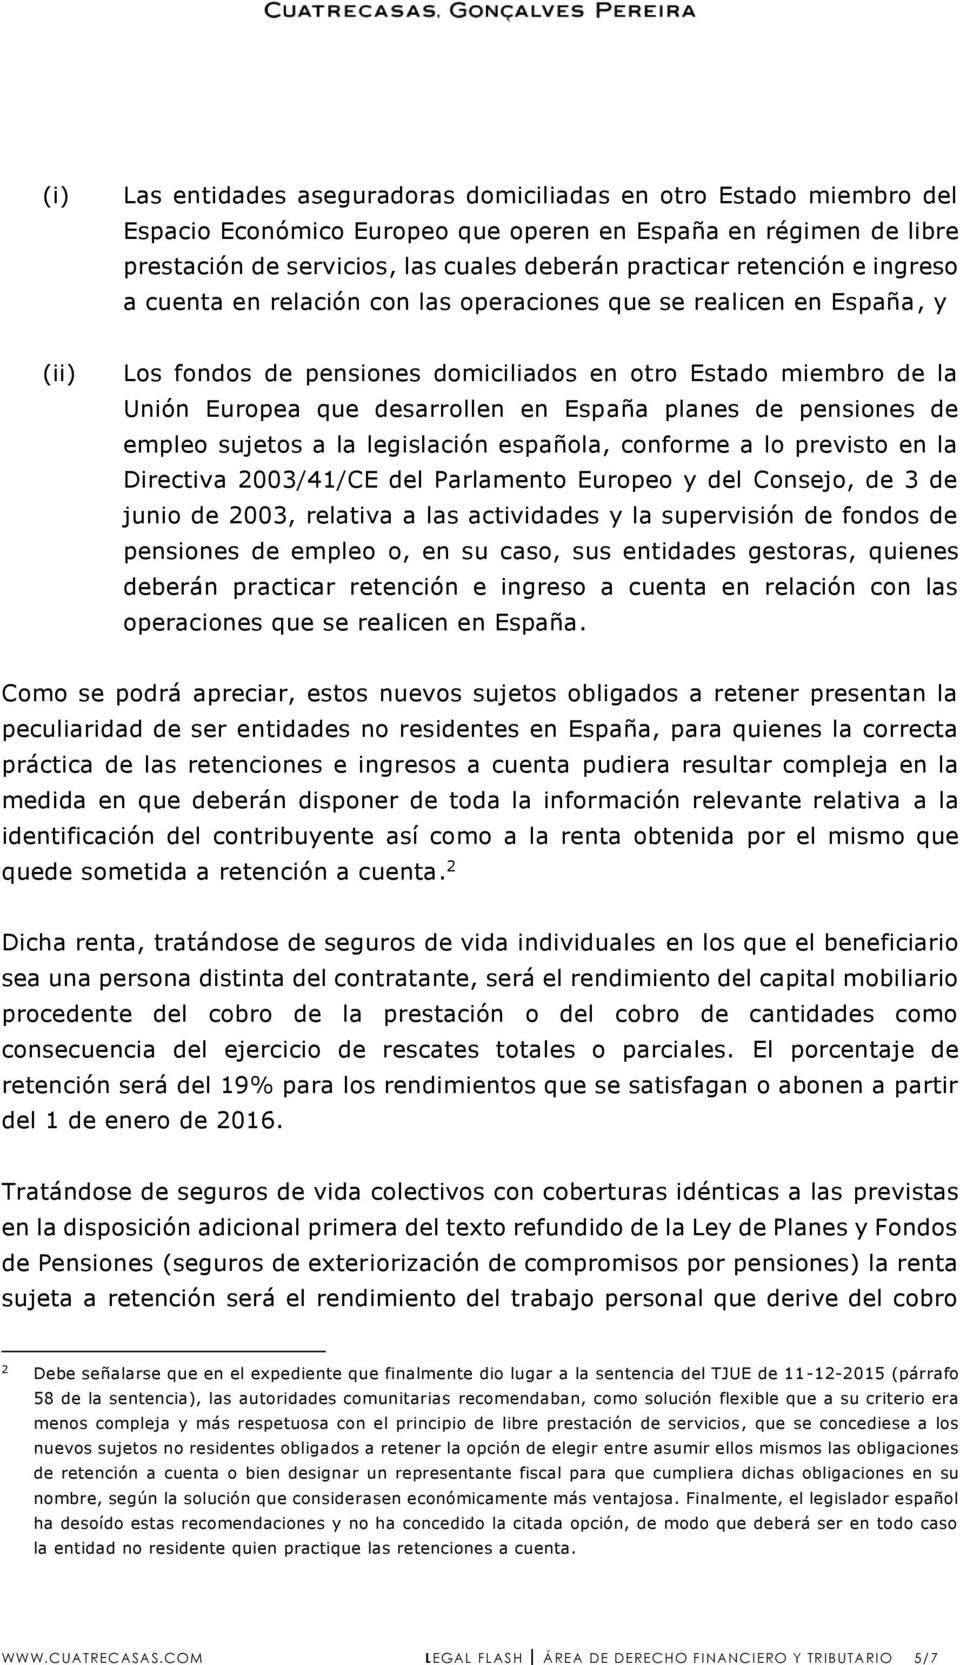 España planes de pensiones de empleo sujetos a la legislación española, conforme a lo previsto en la Directiva 2003/41/CE del Parlamento Europeo y del Consejo, de 3 de junio de 2003, relativa a las